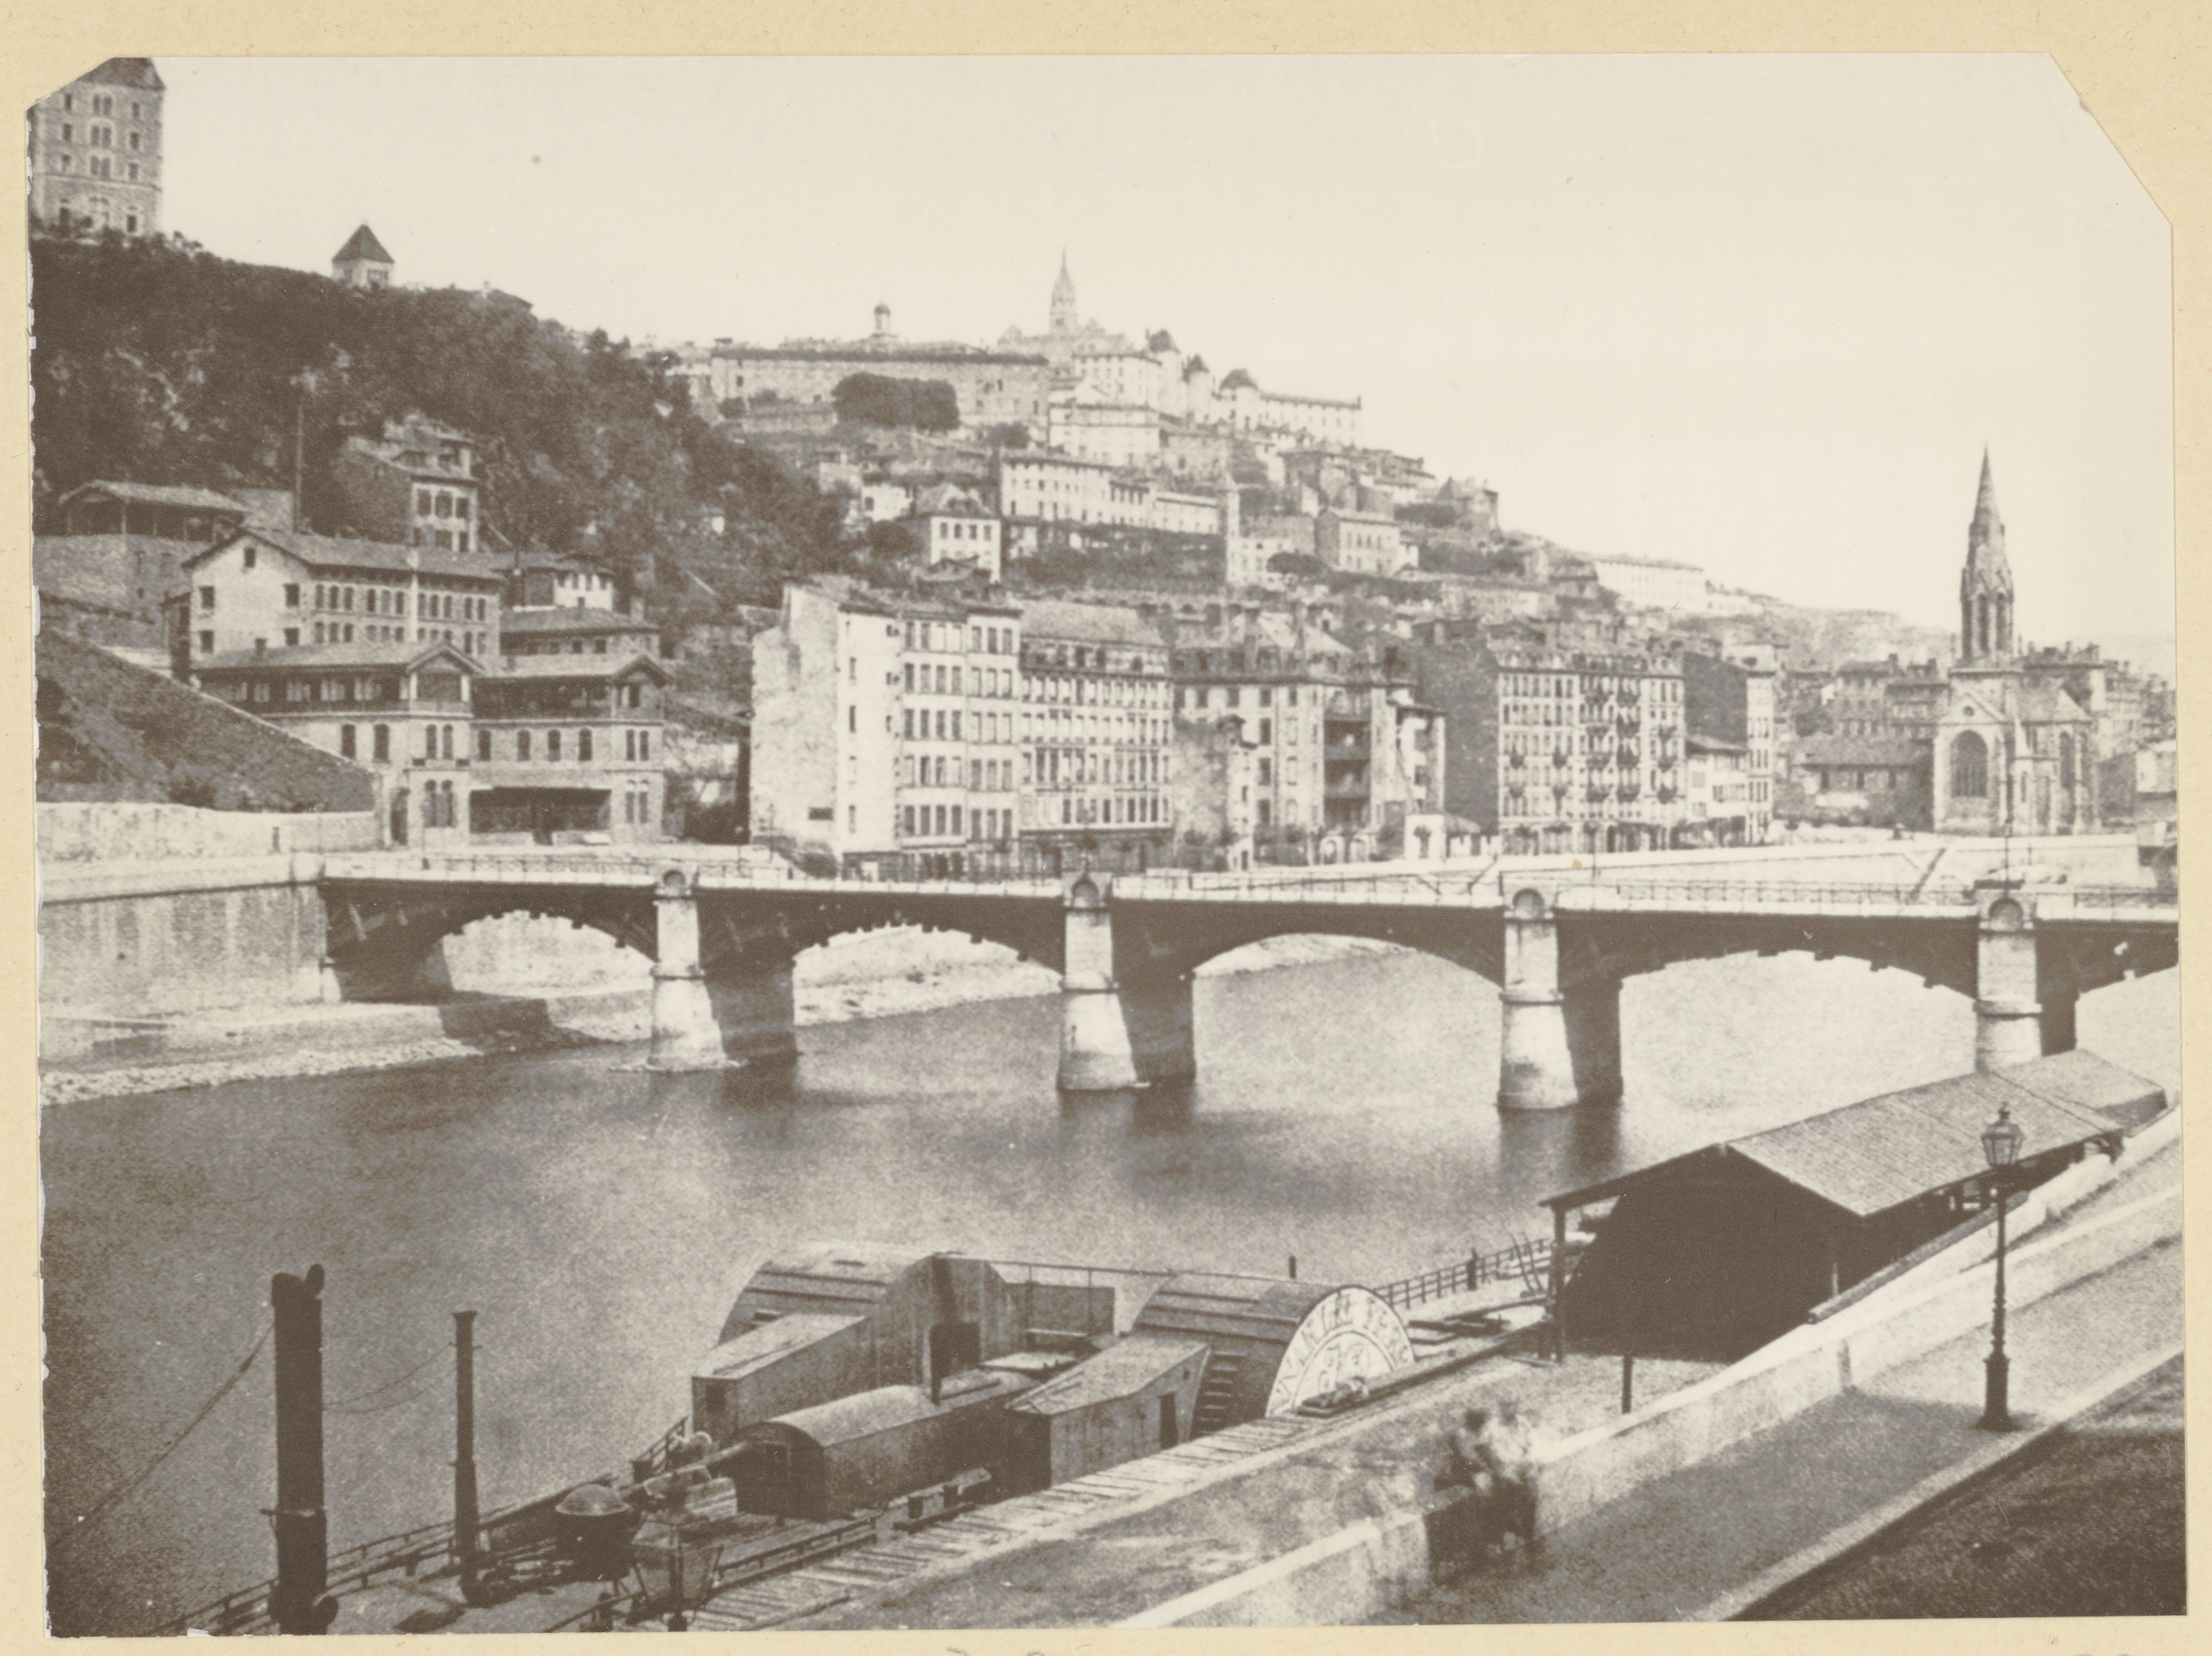 Le Pont d'Ainay, sur la Saône, entre 1860 et 1870  Au premier plan, un "Bonnardel" de la compagnie de navigation sur le Rhône. Quartier Saint gorges, au fond la colline de Fourvière. © Bibliothèque municipale de Lyon